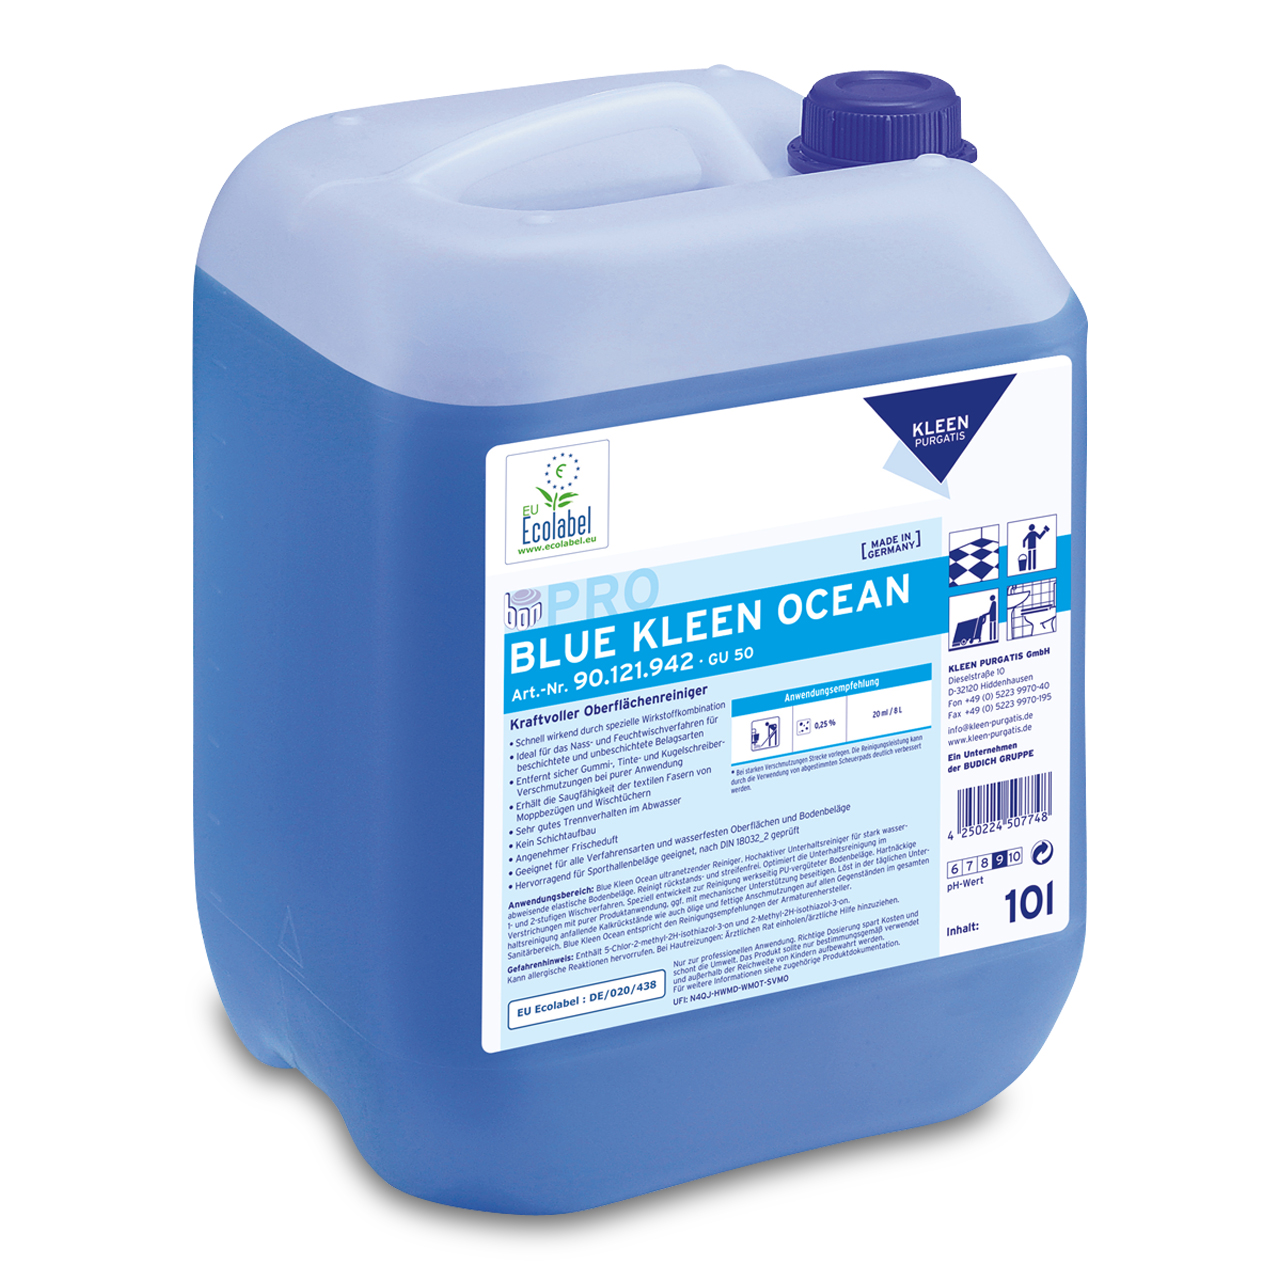 Blue Kleen Ocean, Mehrzweckreiniger